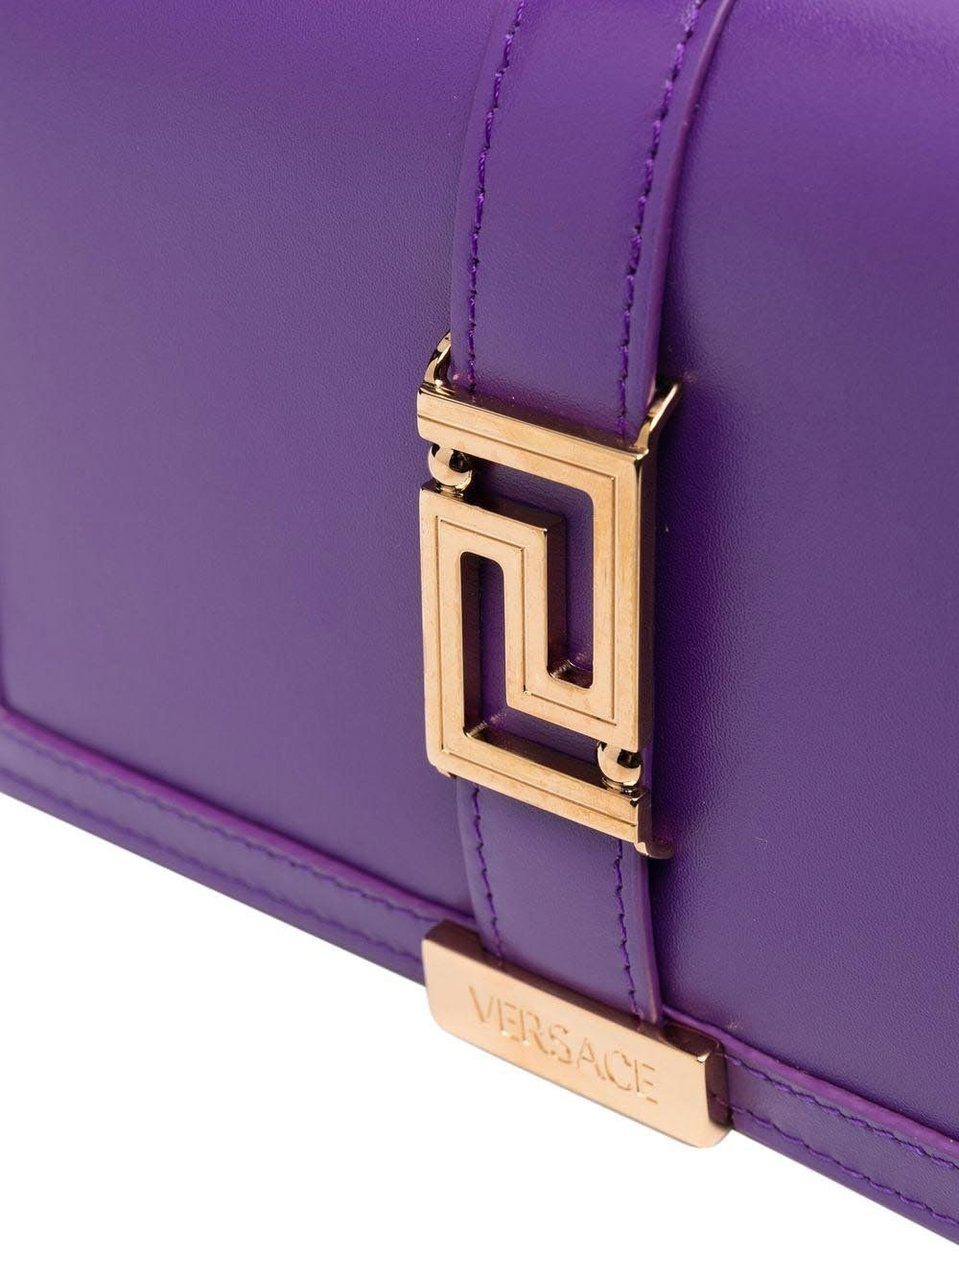 Versace Bags Purple Paars